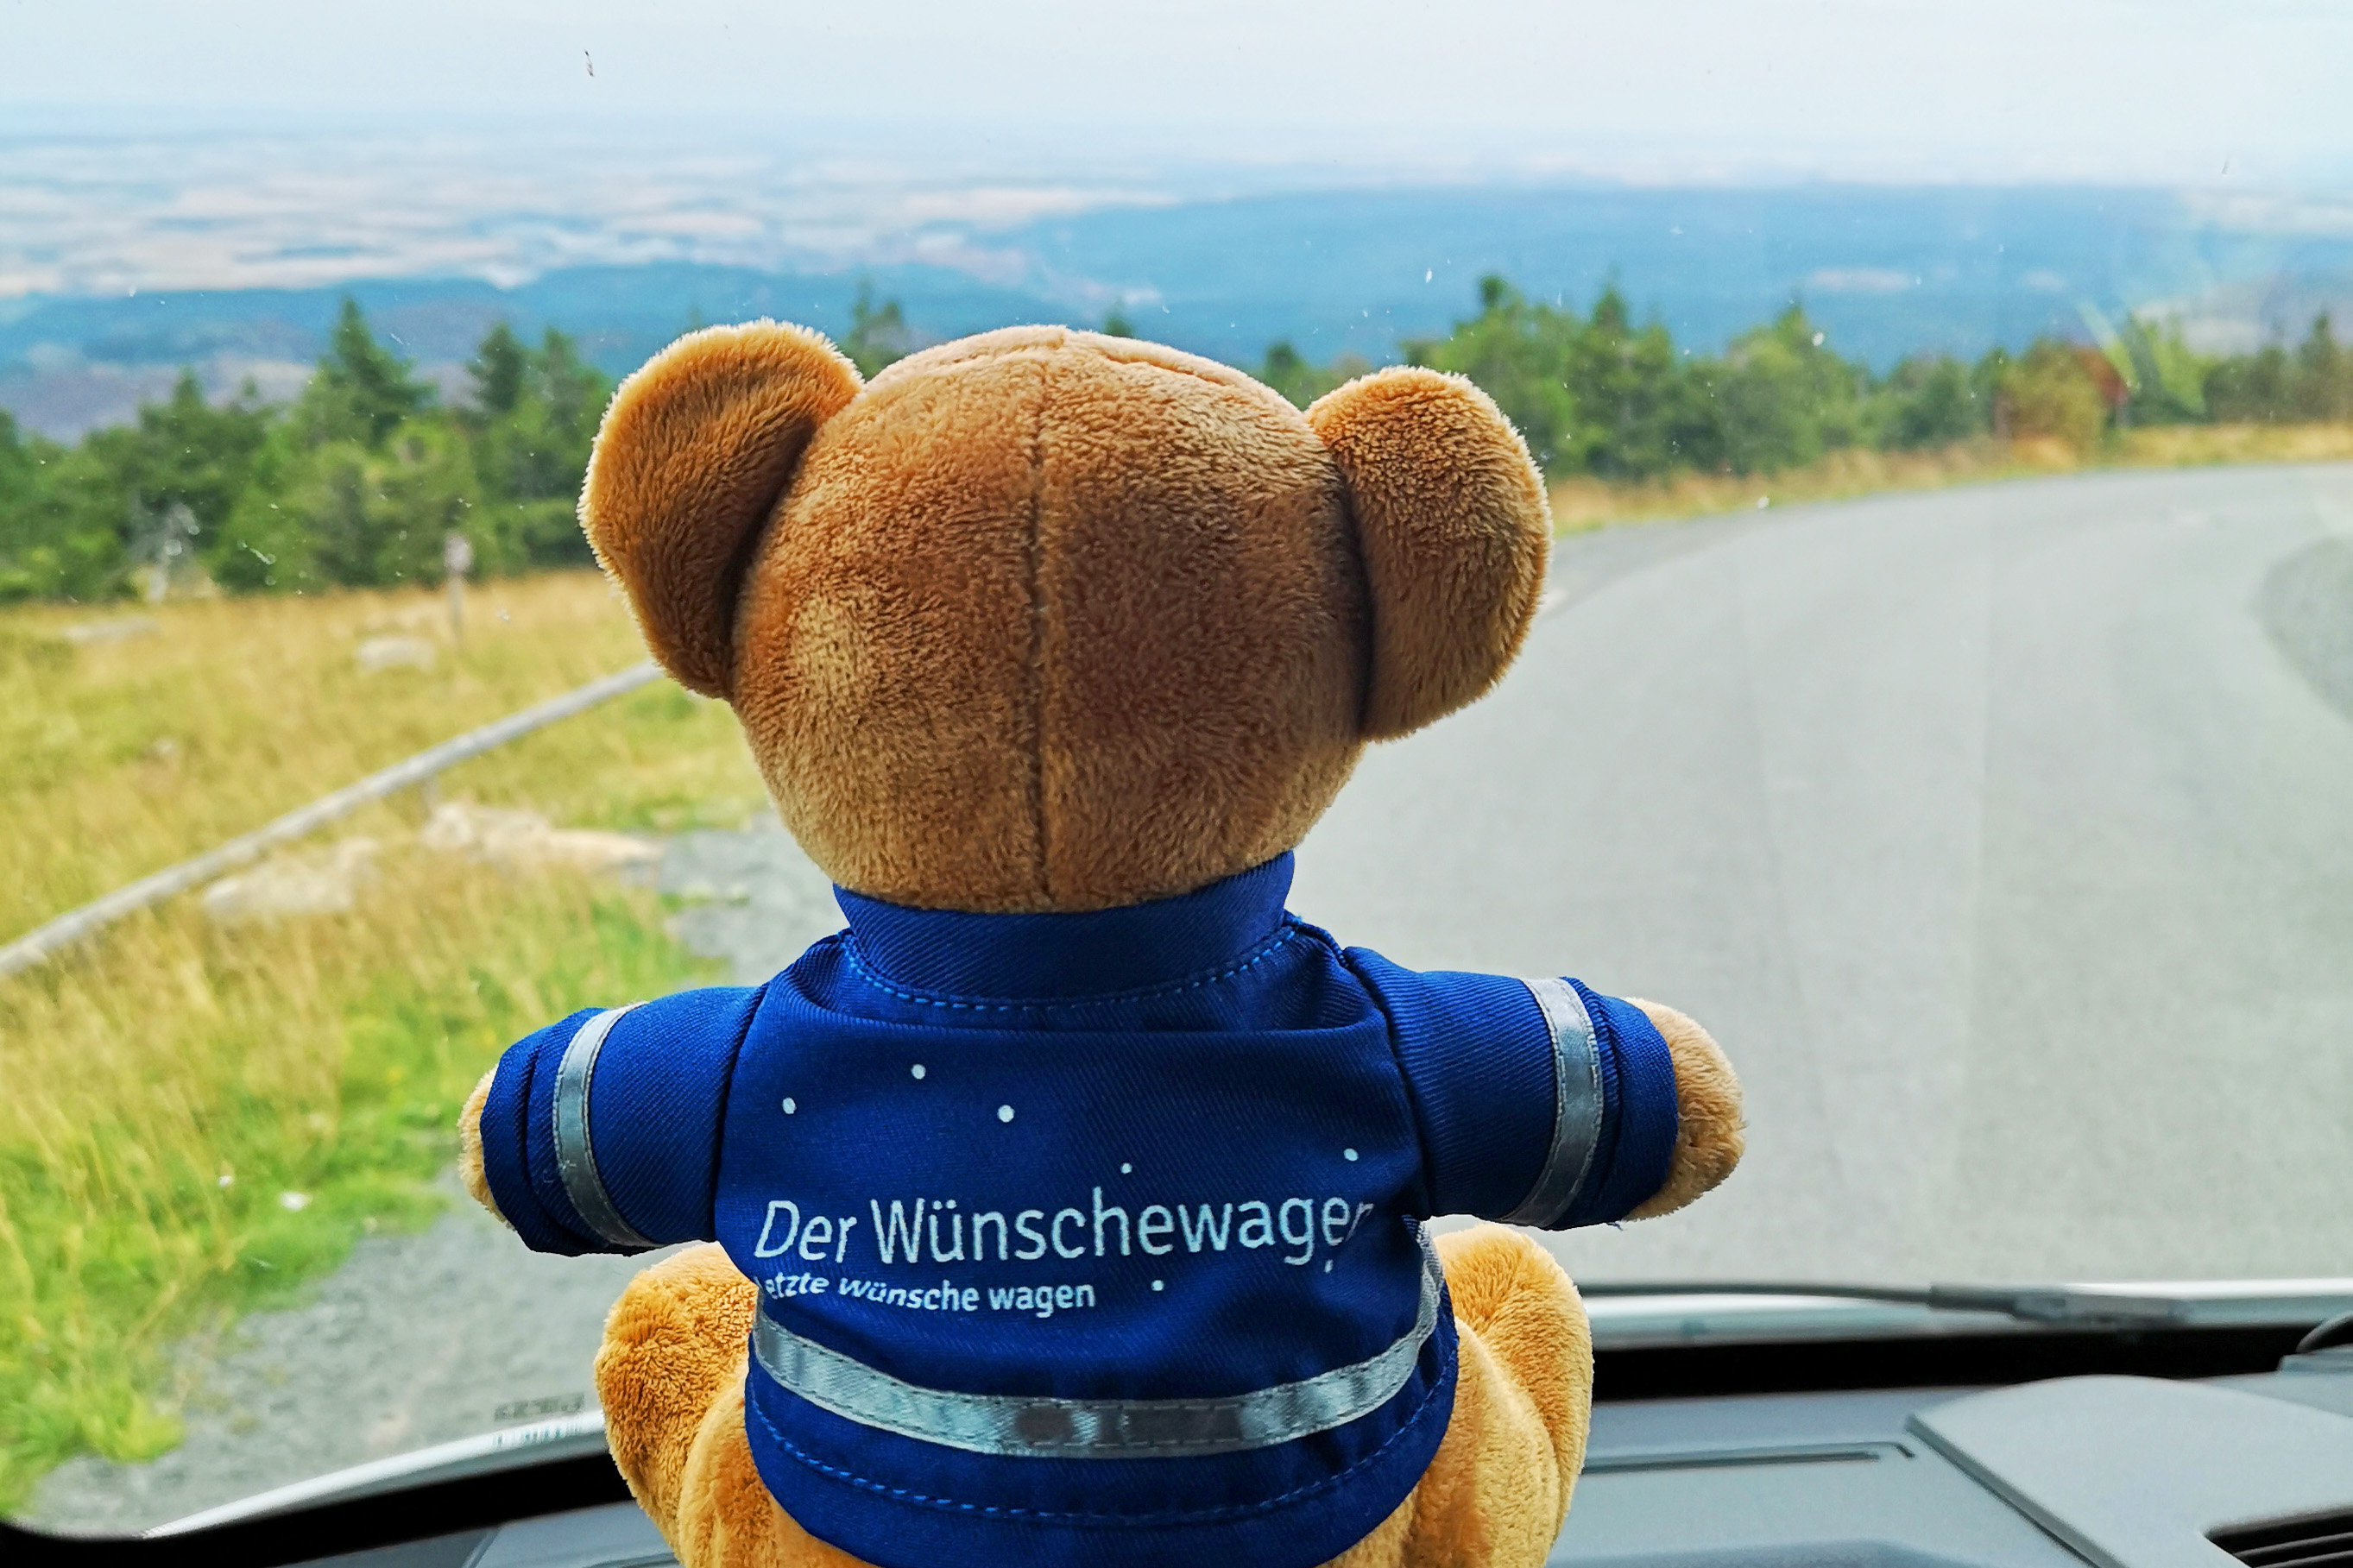 Seit einem Jahr rollt der blaue Wunscherfüller auch in Sachsen-Anhalt und hilft, einen der letzten Tage mit Freude und Glück zu verbringen. 